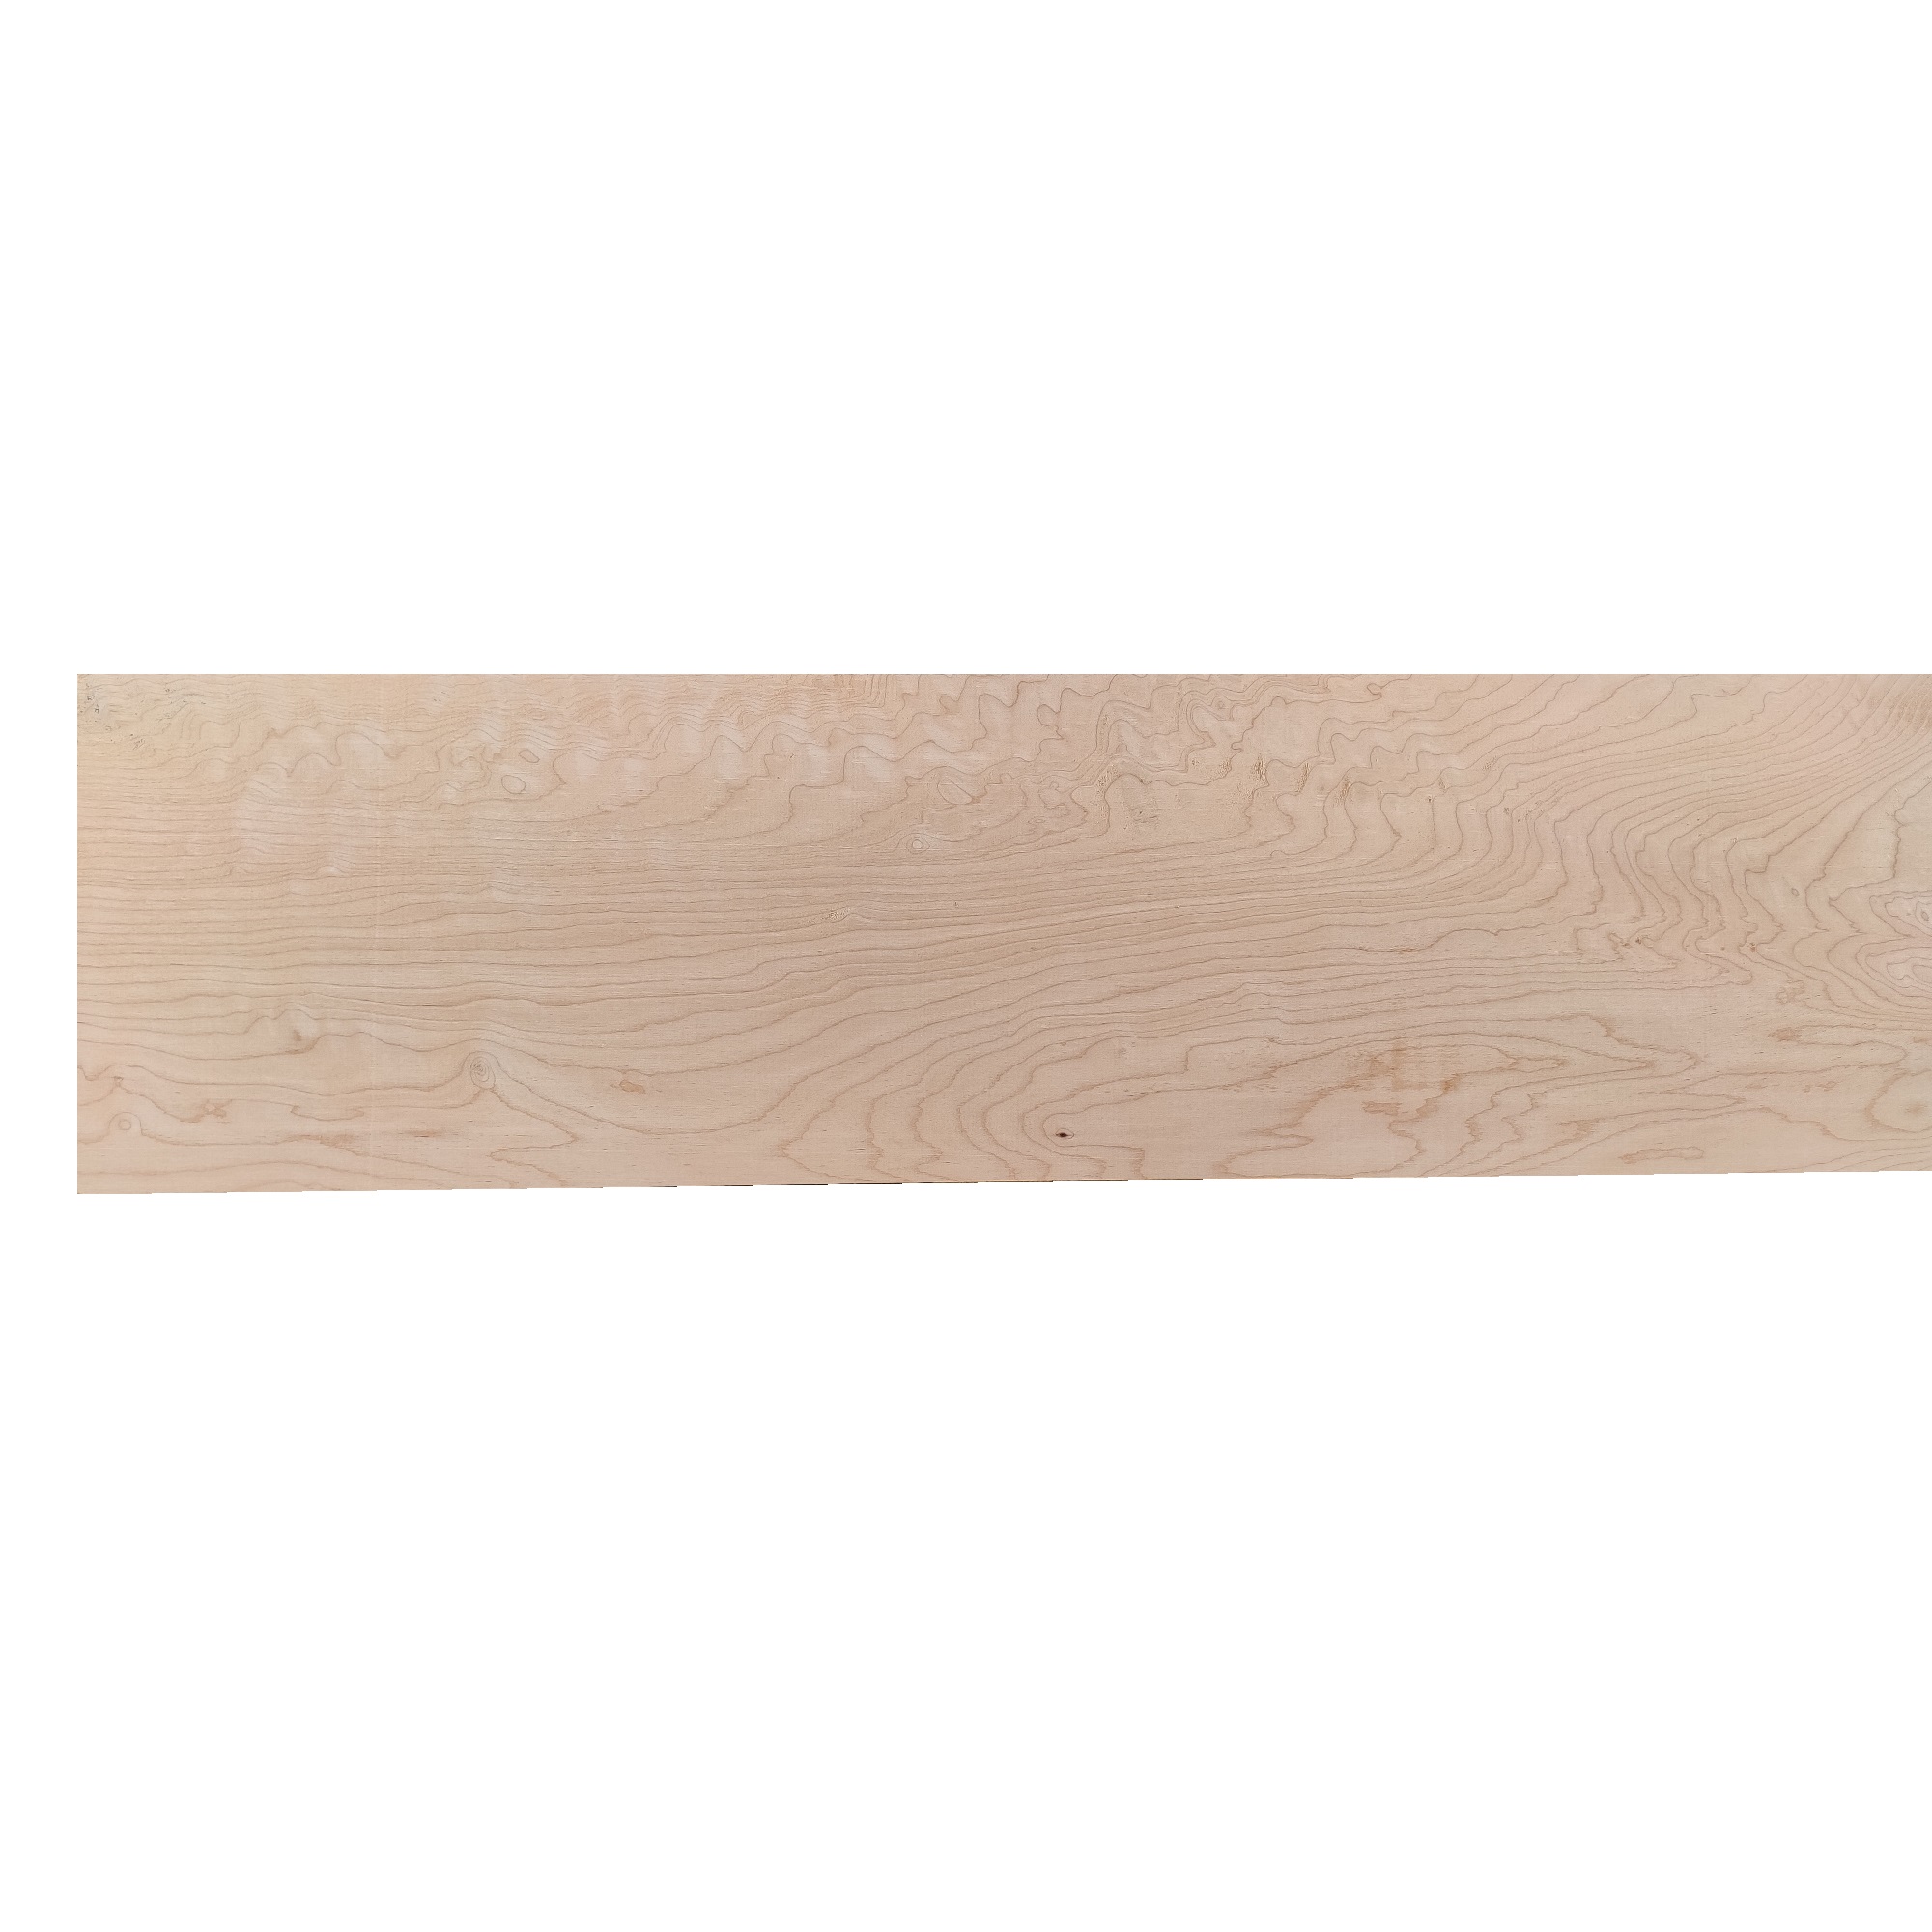 Tavola legno di Acero Pacific Coast Maple Calibrato refilato grezzo mm 24 x  130 x 2440